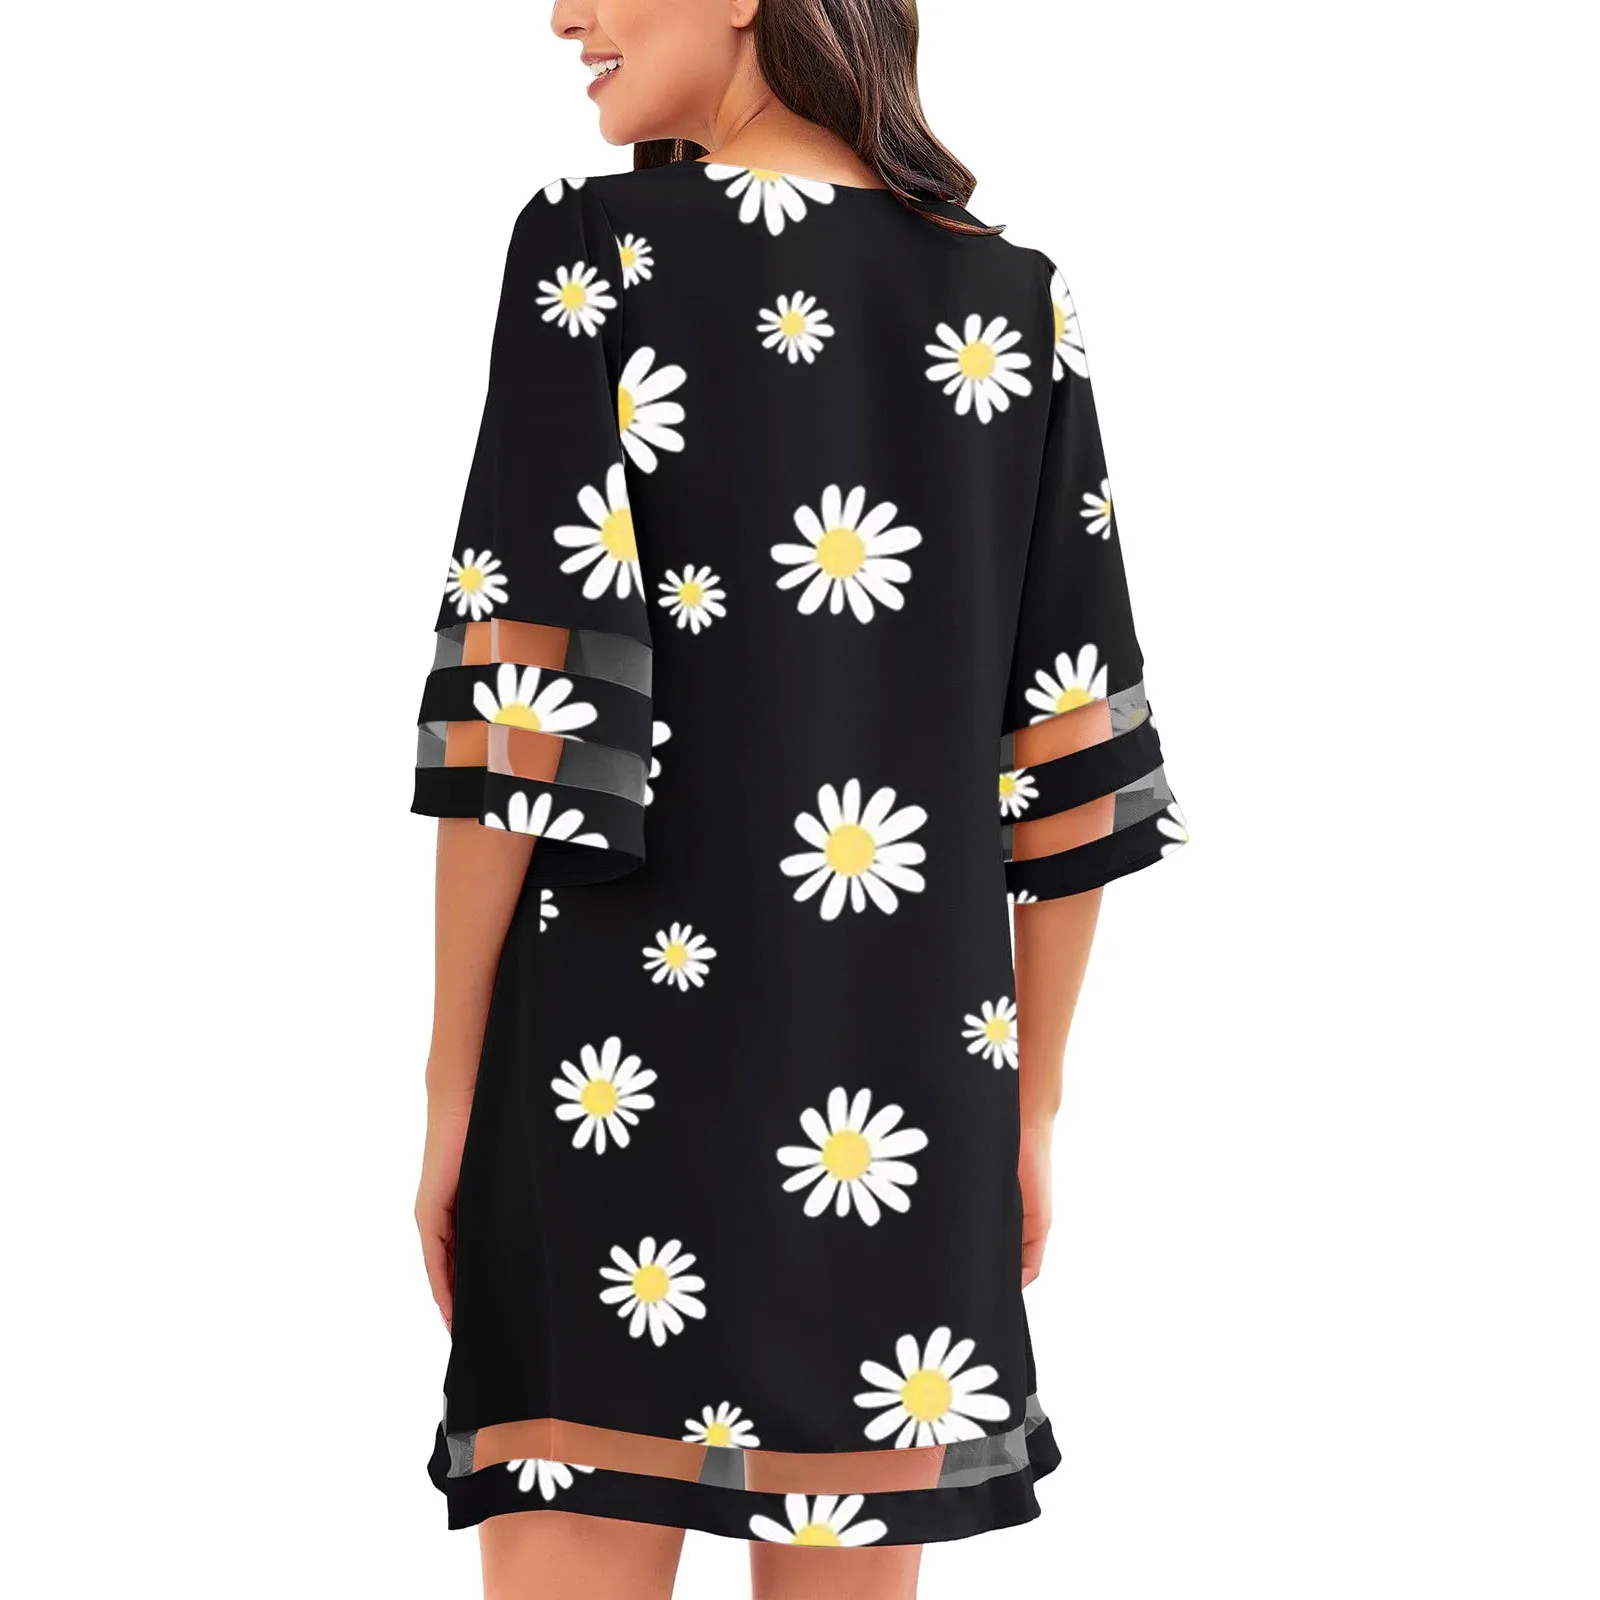 Sleeveless Dress for Women Women 2021 Fashion Short Sleeve Dress Sunflower Butterfly Dasiy Print Casual Work Skirt 